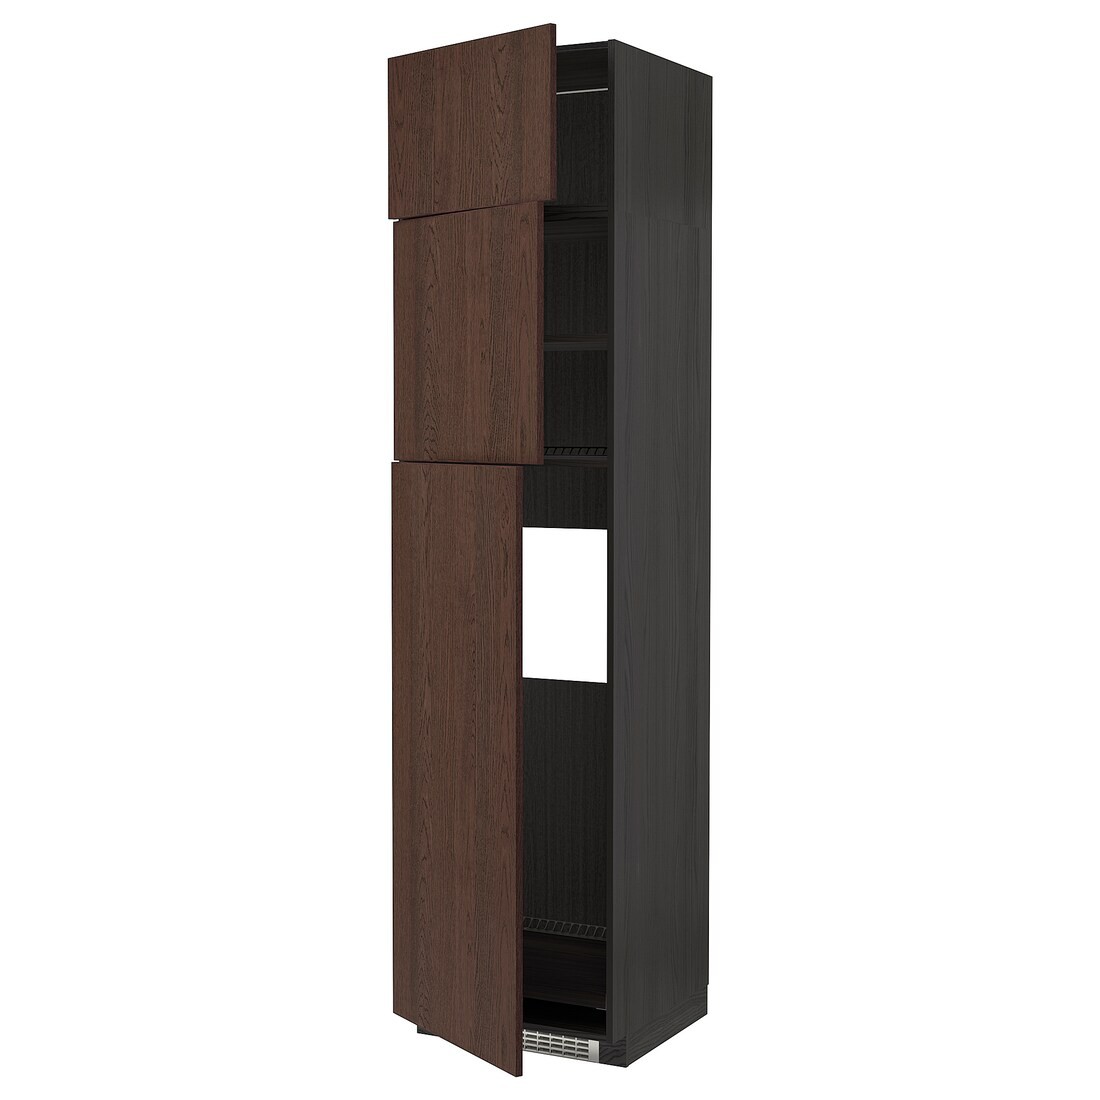 METOD МЕТОД Висока шафа для холодильника з 3 дверима, чорний / Sinarp коричневий, 60x60x240 см